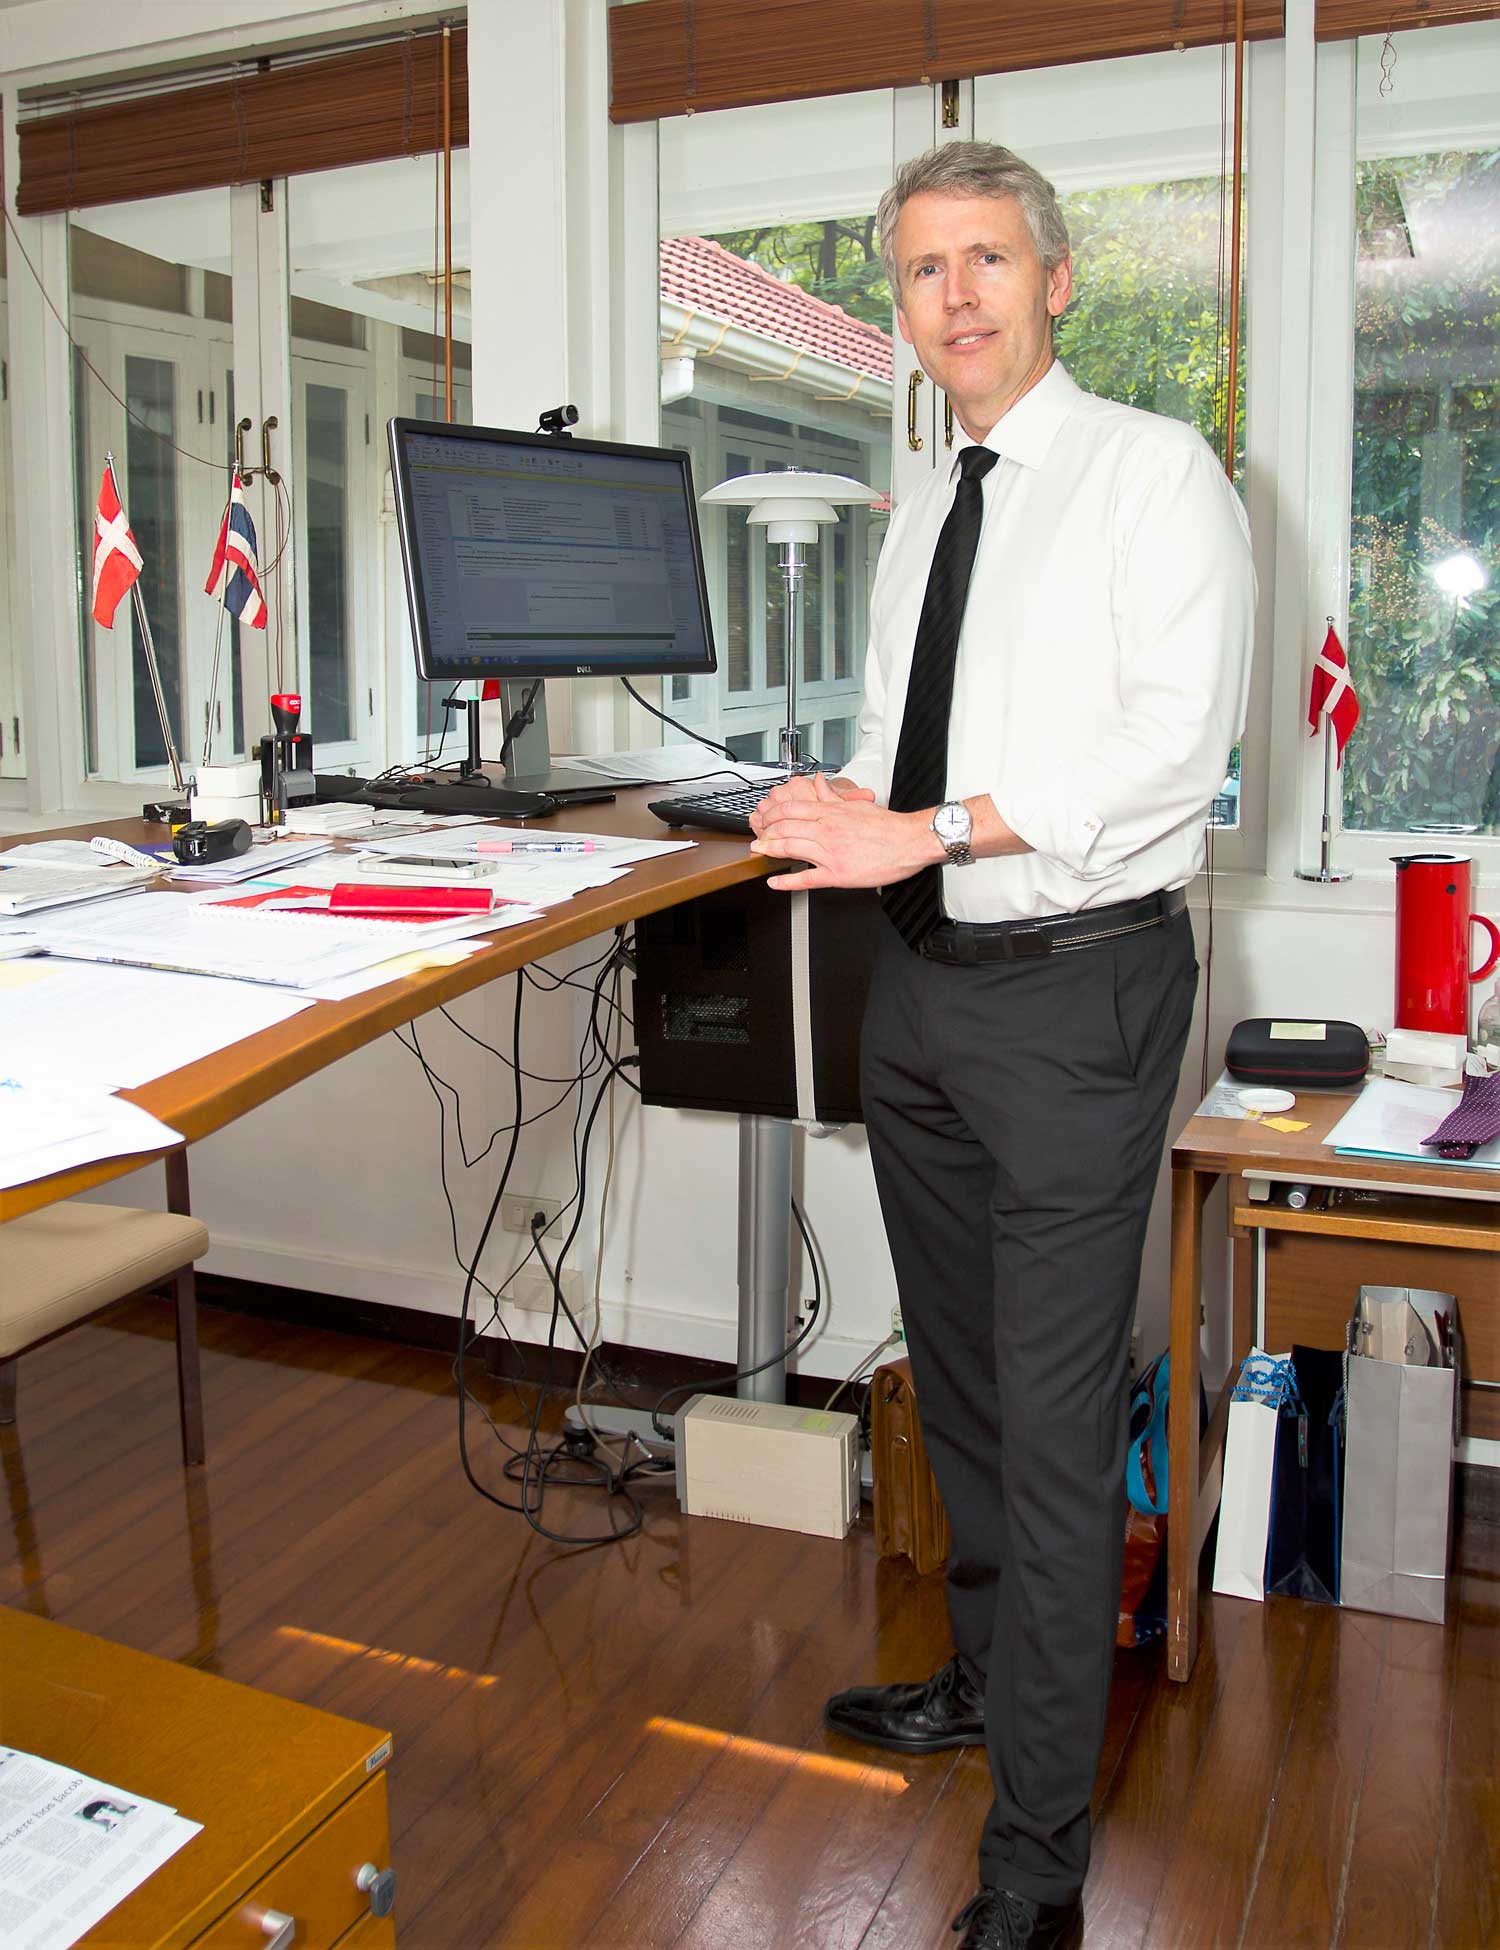 Uffe Wolffhechel, Danish Ambassador to Thailand and Cambodia